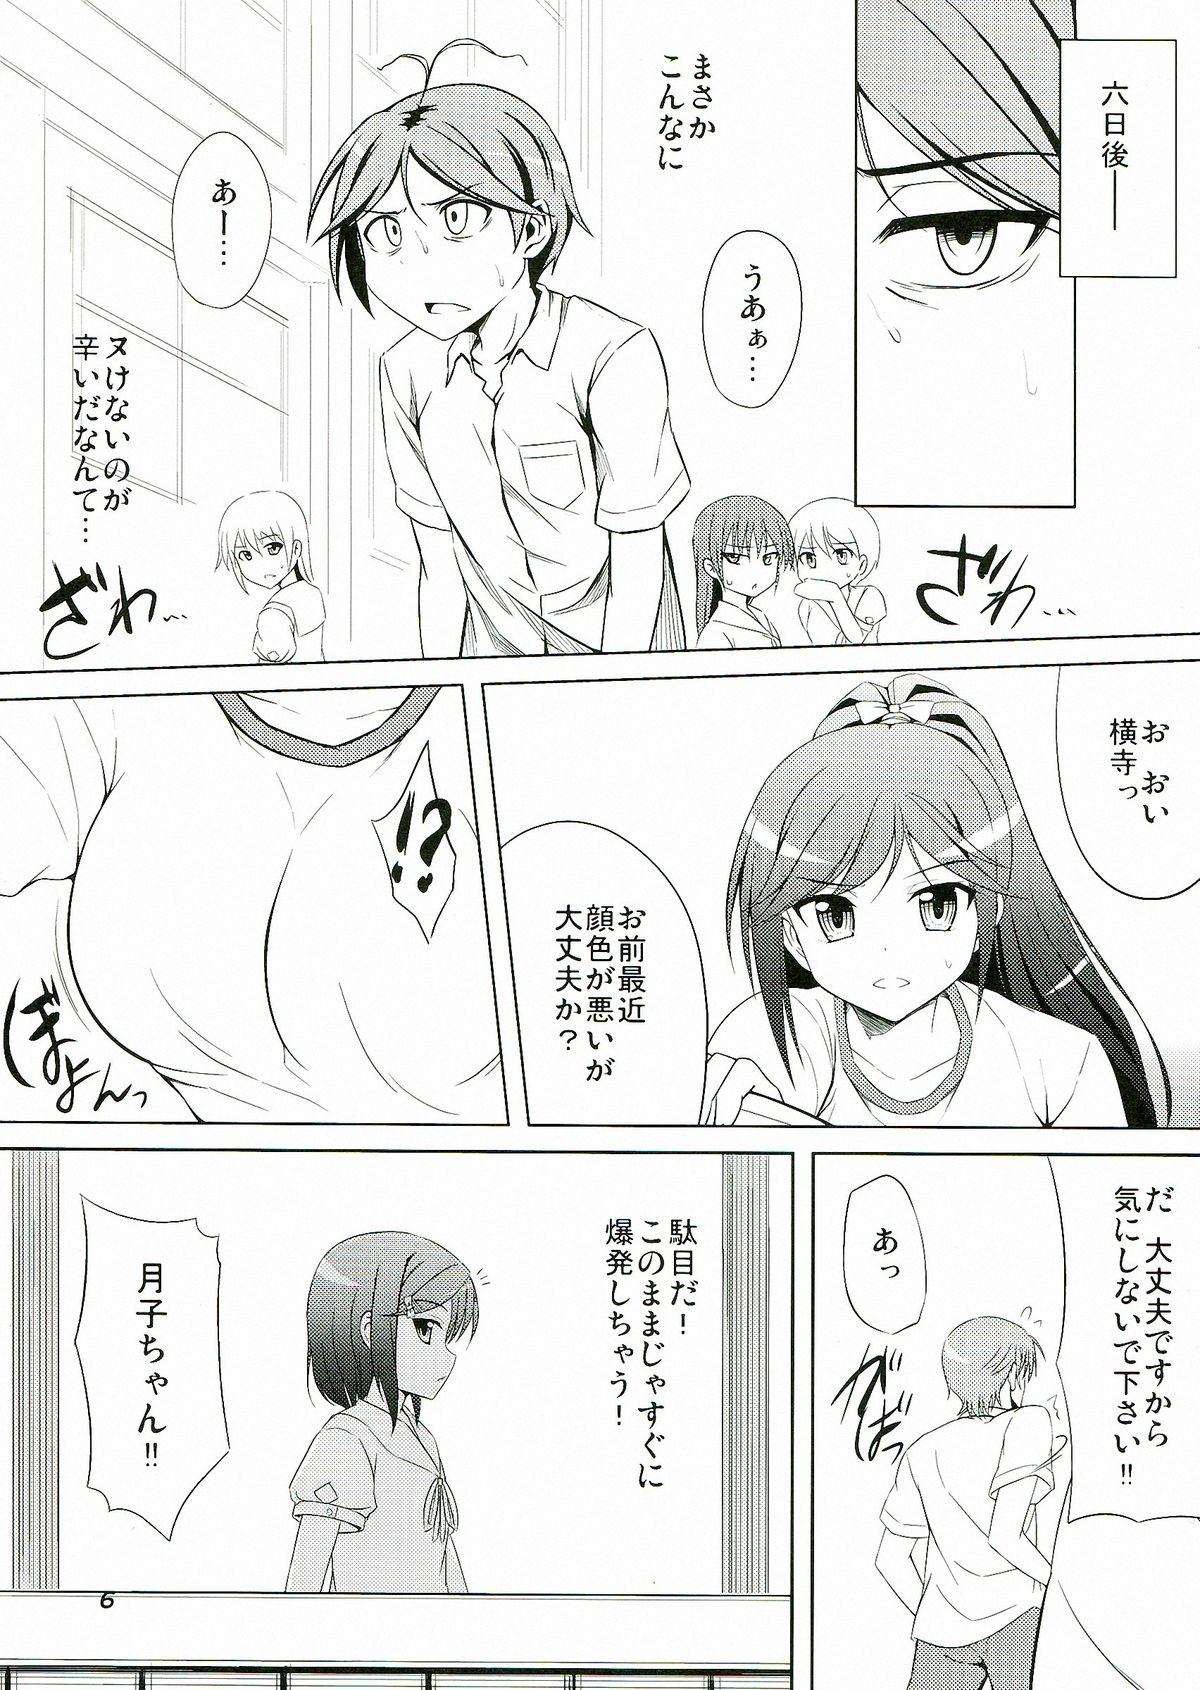 Gayclips Hentai Ouji to Kanri suru Neko. - Hentai ouji to warawanai neko Gaydudes - Page 8